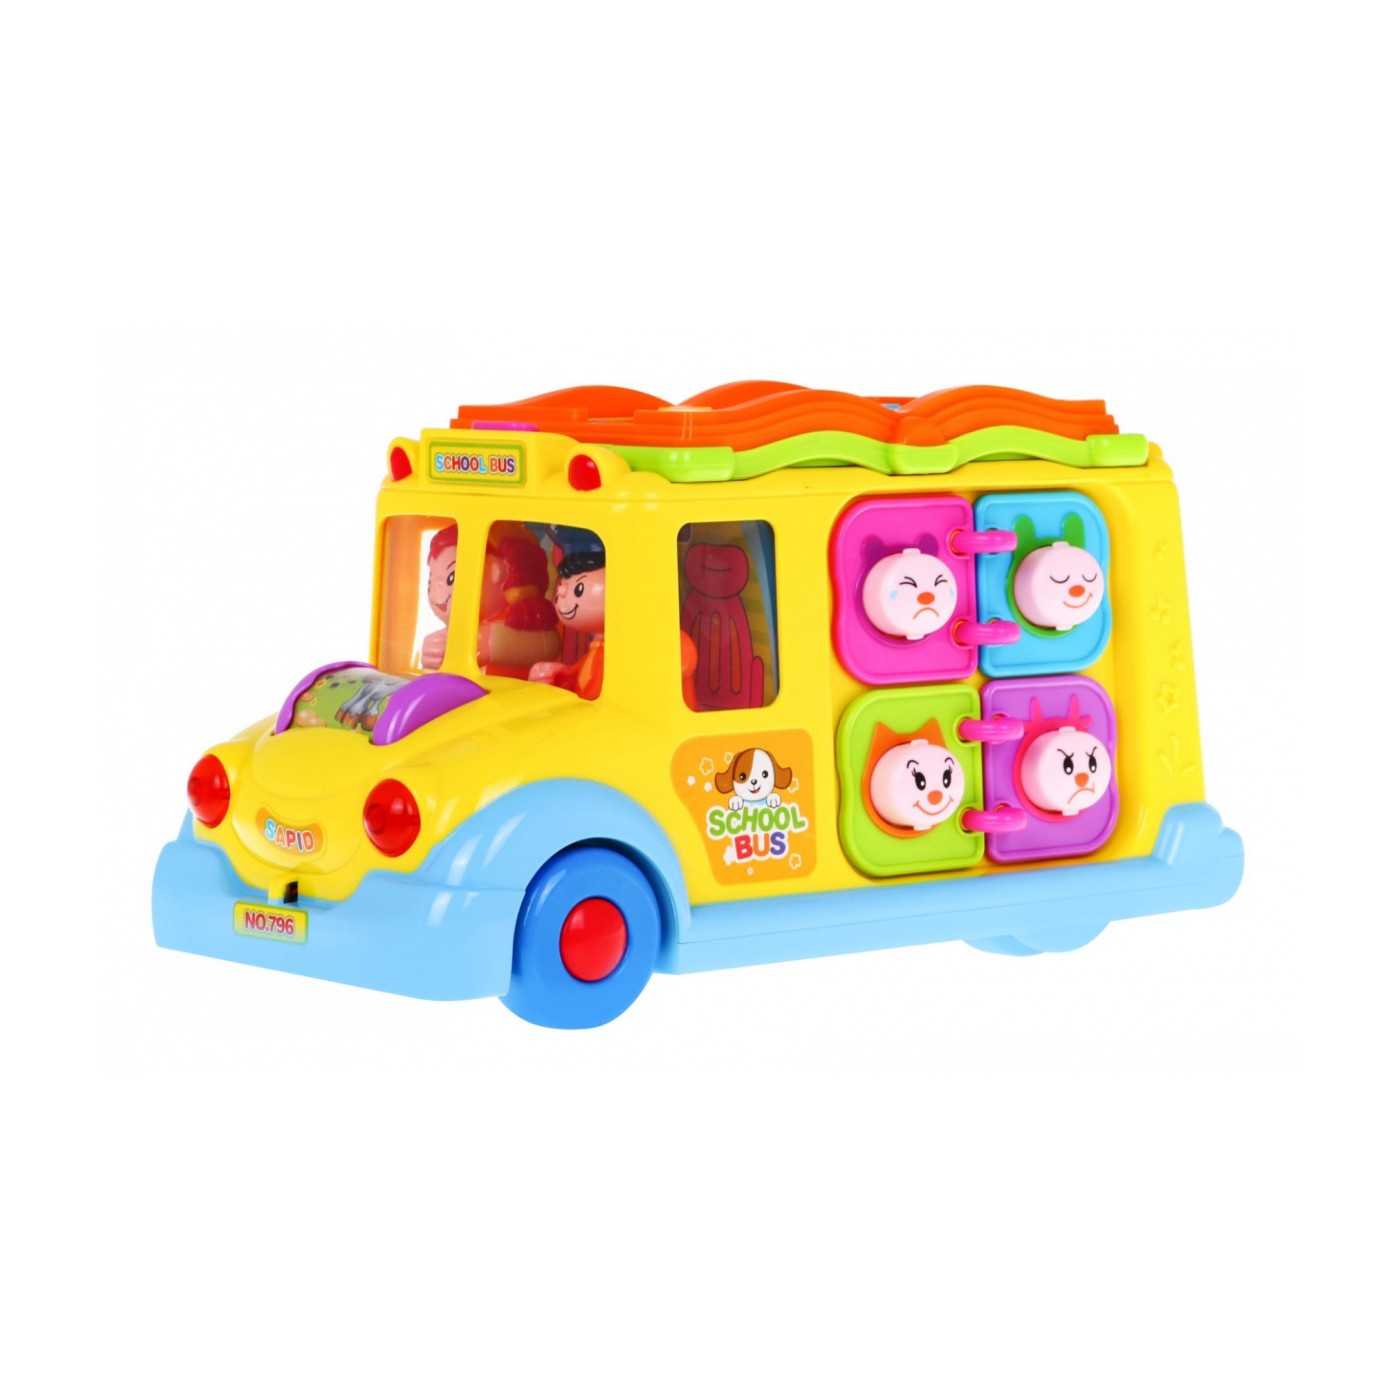 Multifunkcyjny Autobus dla dzieci 12m+ Dźwięki Światła + Ruchome elementy + Mini zabawy interaktywne